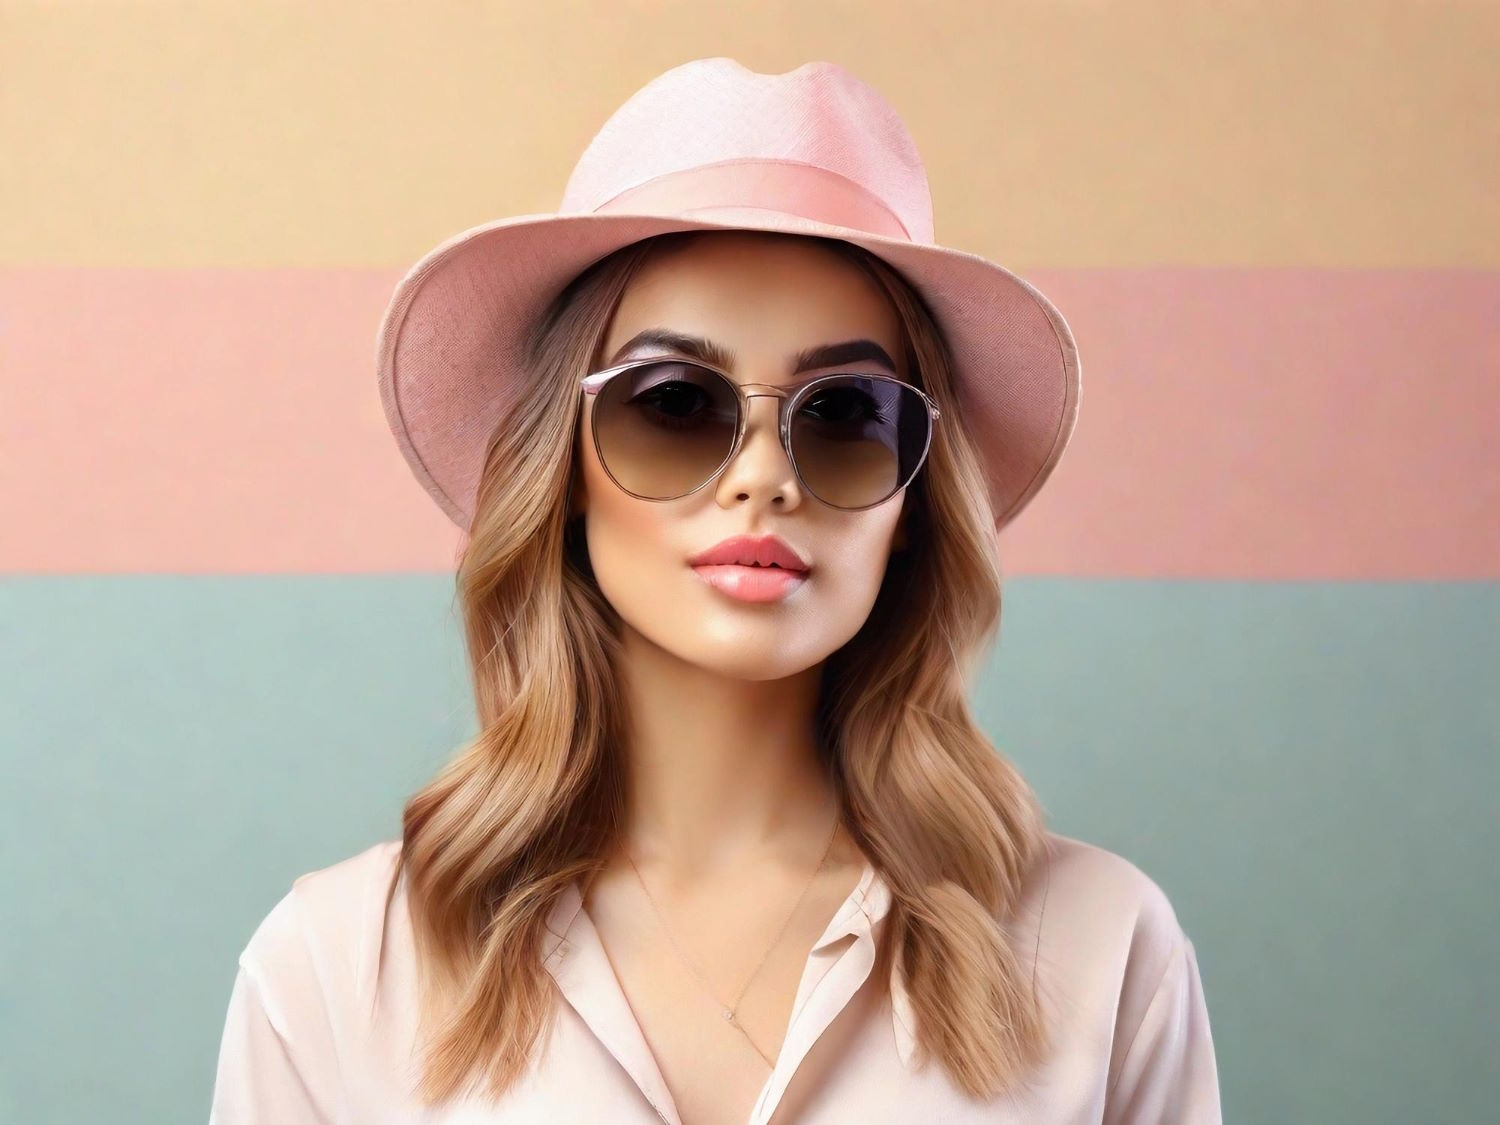 Luksusowe okulary przeciwsłoneczne Prada dla kobiet – stylowe dodatki od renomowanej marki